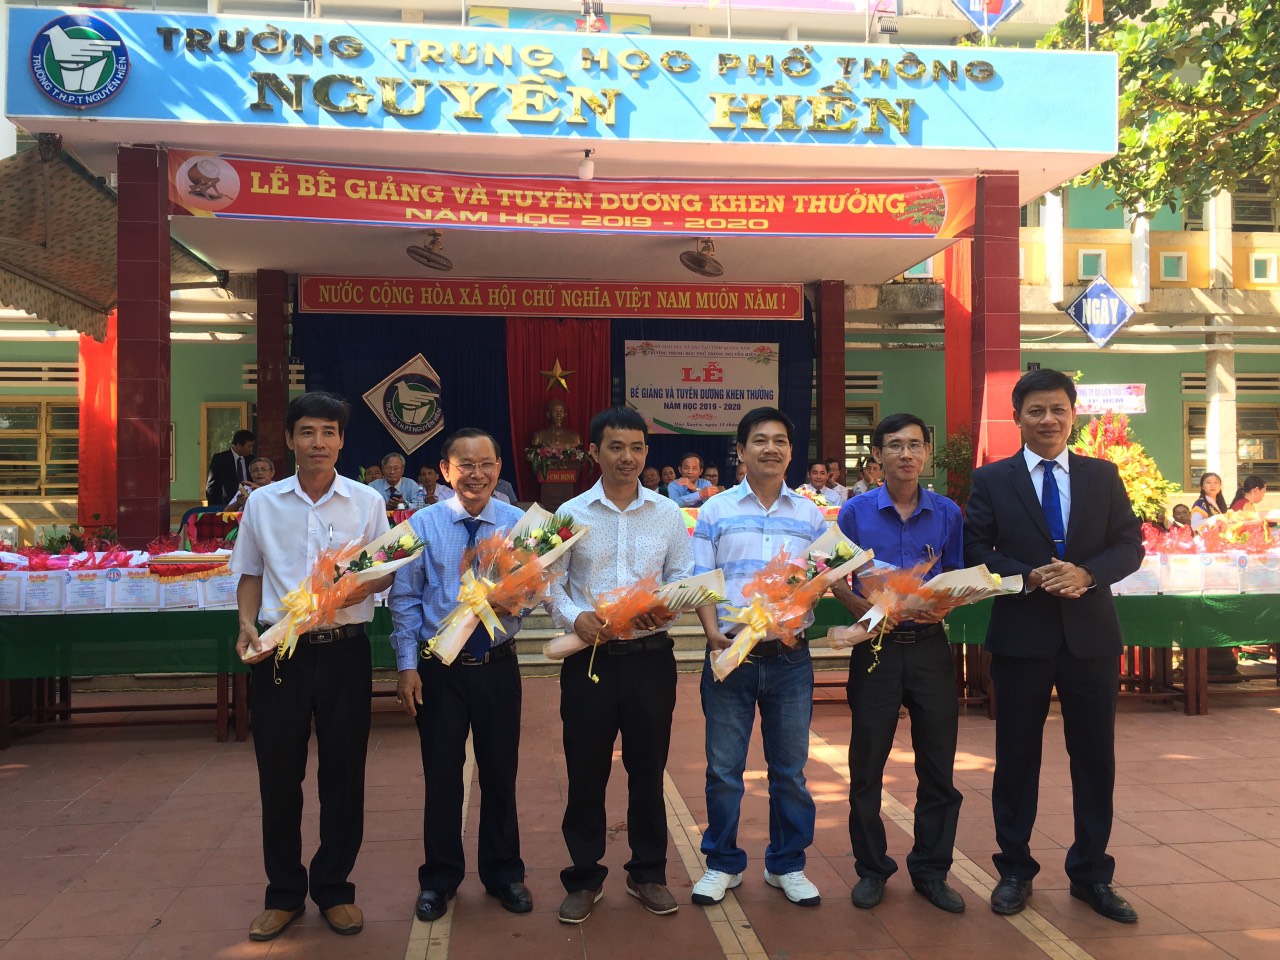 Giám đốc 8X Nguyễn Trung Trực và con đường trở thành doanh nhân trẻ tiêu biểu của Việt Nam - ảnh 4